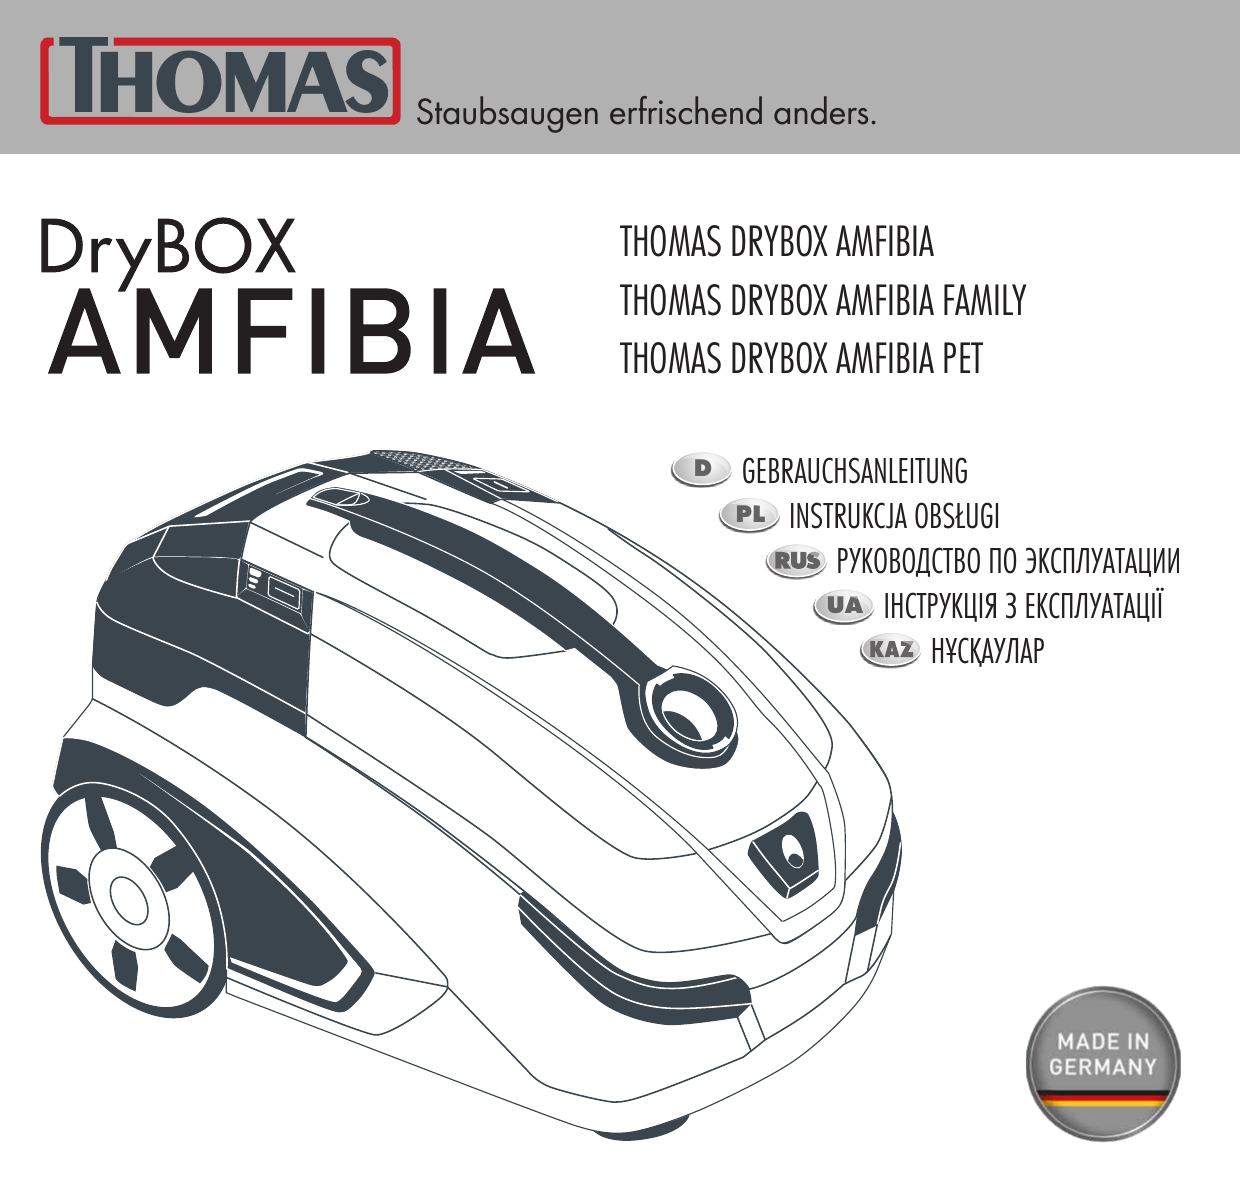 Моющий thomas 788598 drybox amfibia pet. Thomas 788598 DRYBOX Amfibia Pet. Thomas 788599 DRYBOX Amfibia Family. Thomas DRYBOX Amfibia инструкция. Пылесос Thomas Amfibia инструкция.